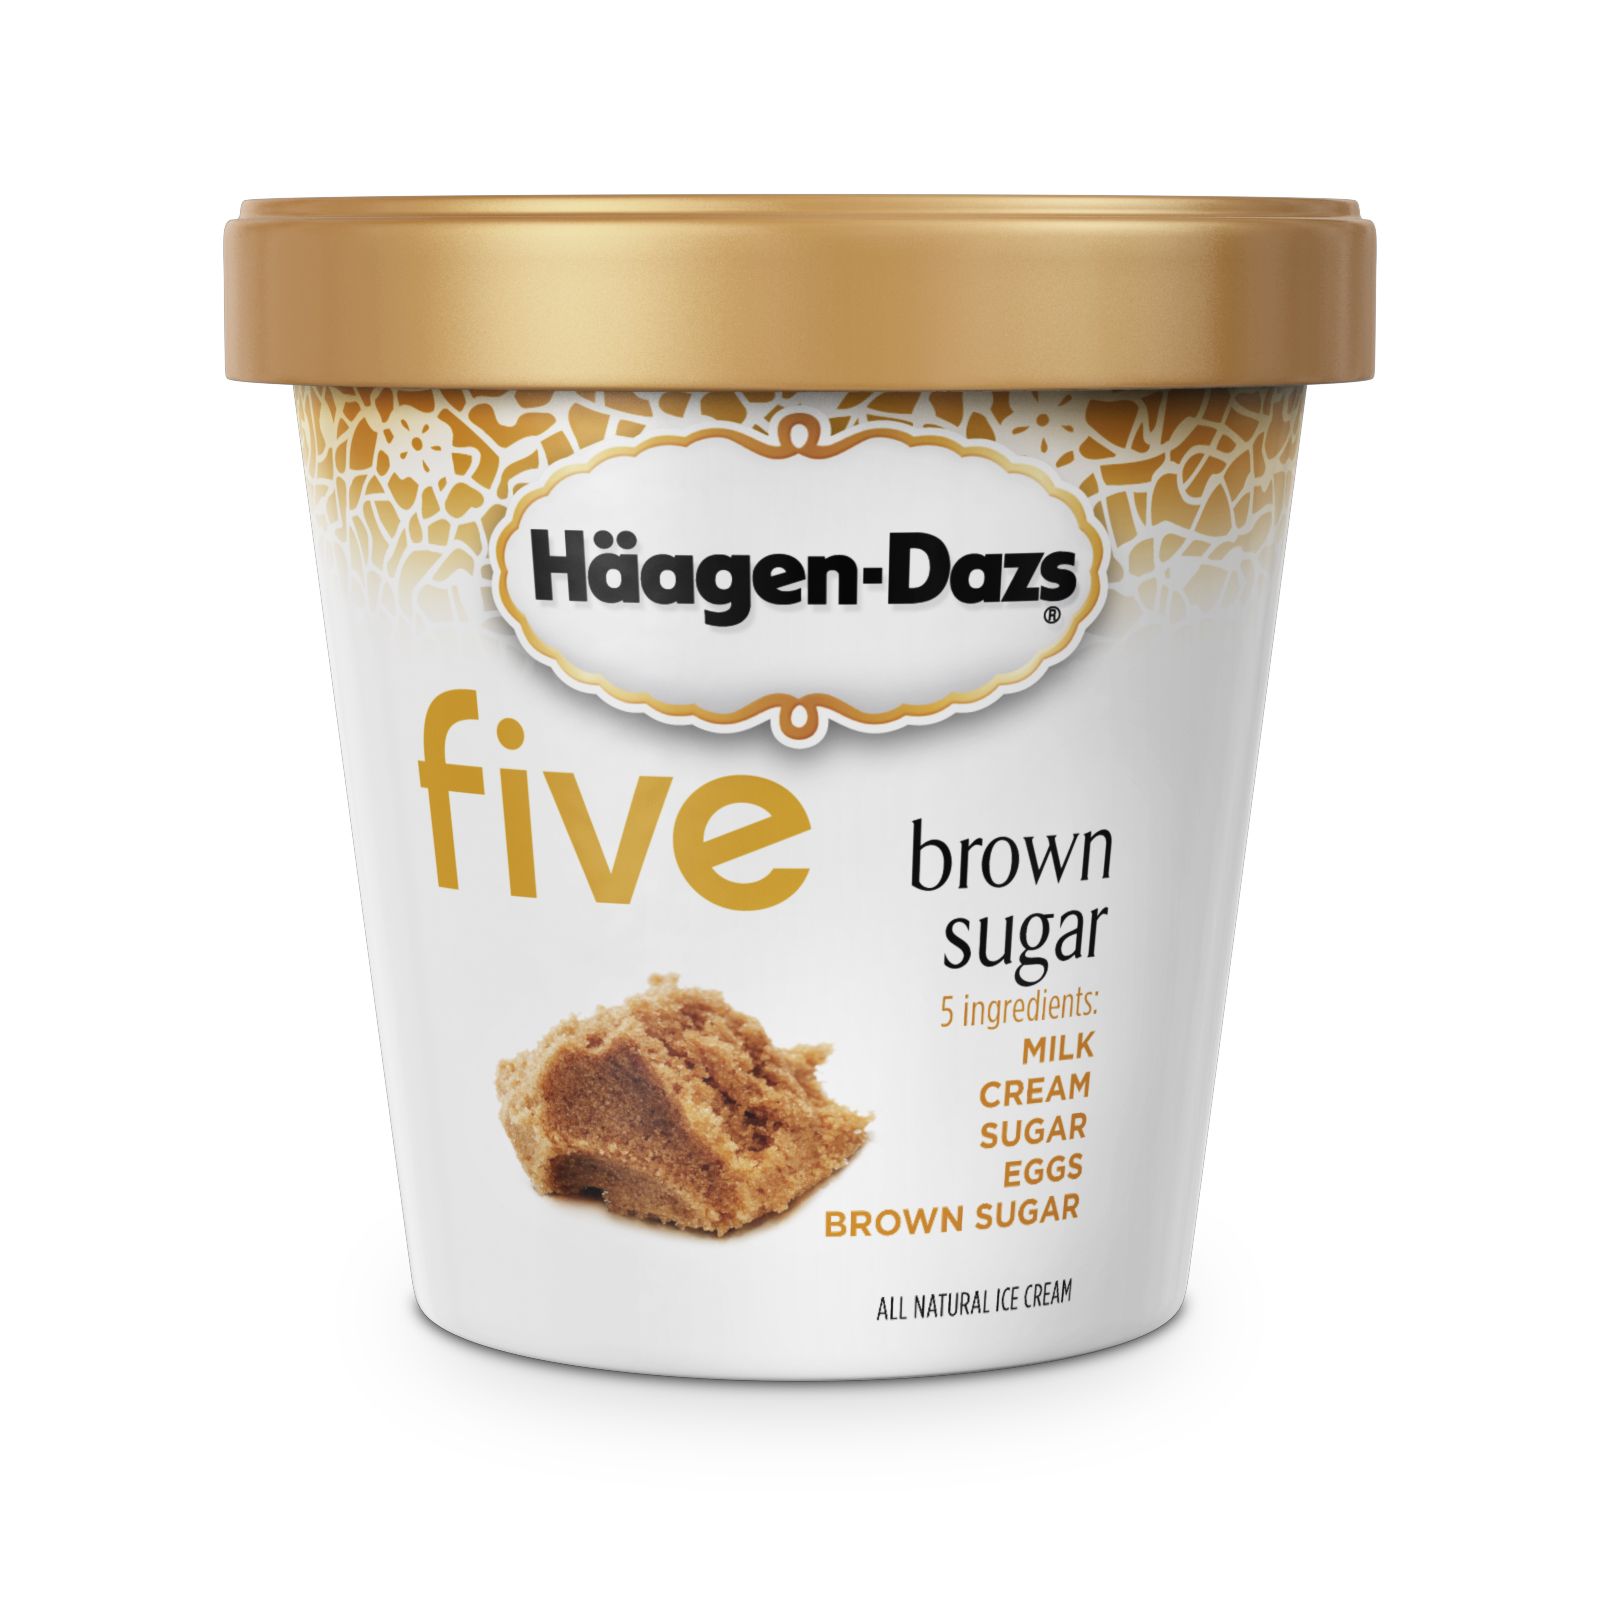 Häagen-Dazs Five Ingredients Ice Cream - Dazs Haagen Natural